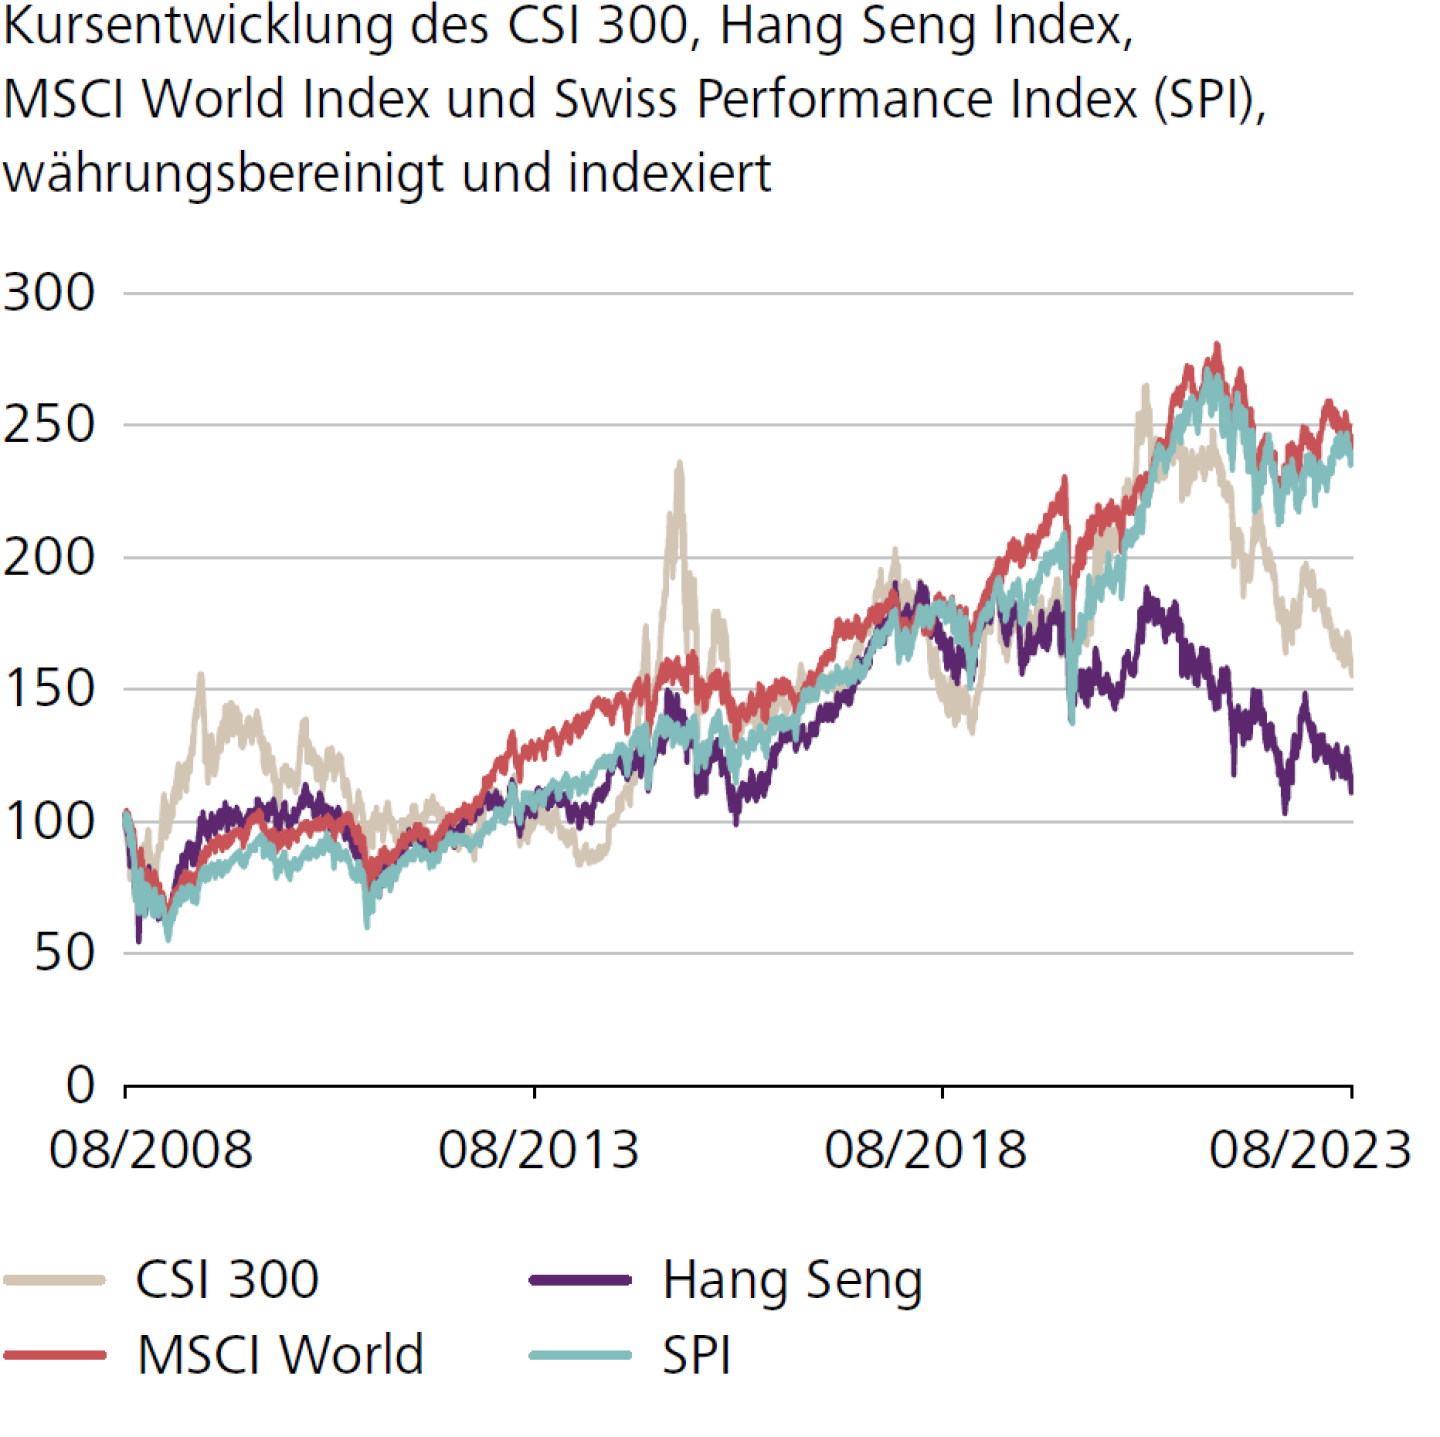 Kursentwicklung des CSI 300, Hang Seng Index, MSCI World Index und Swiss Performance Index (SPI), währungsbereinigt und indexiert 